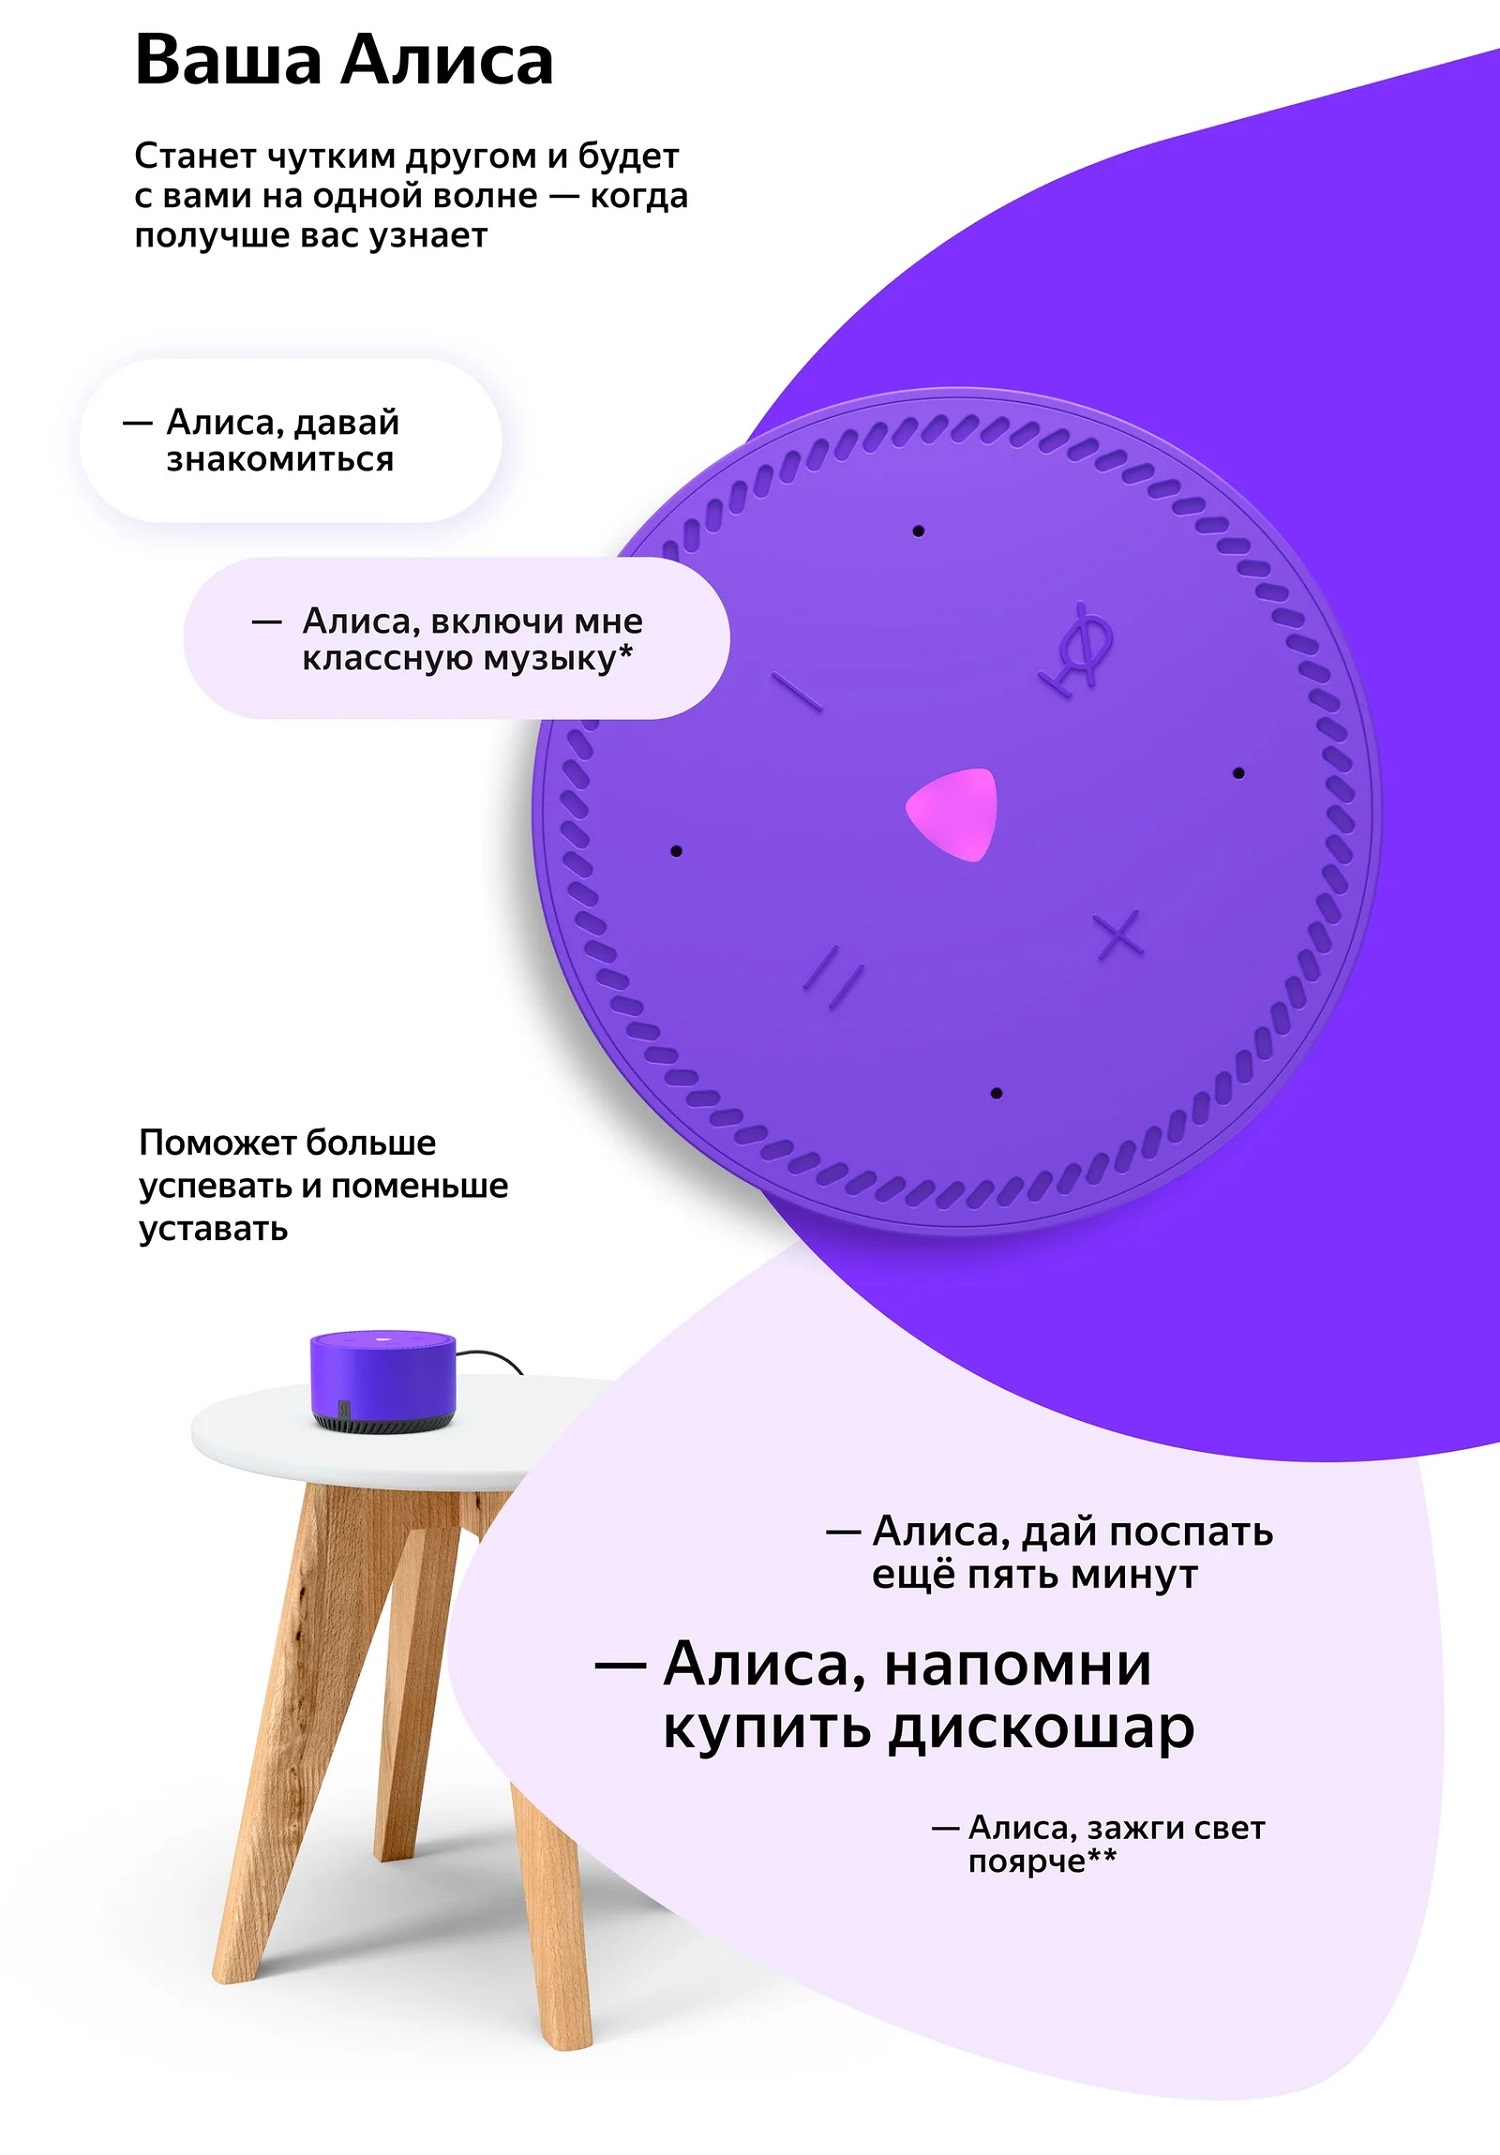 Акустическая система Yandex YNDX-00025, Яндекс.Станция Лайт, фиолетовая (умная колонка с голосовым помощником)